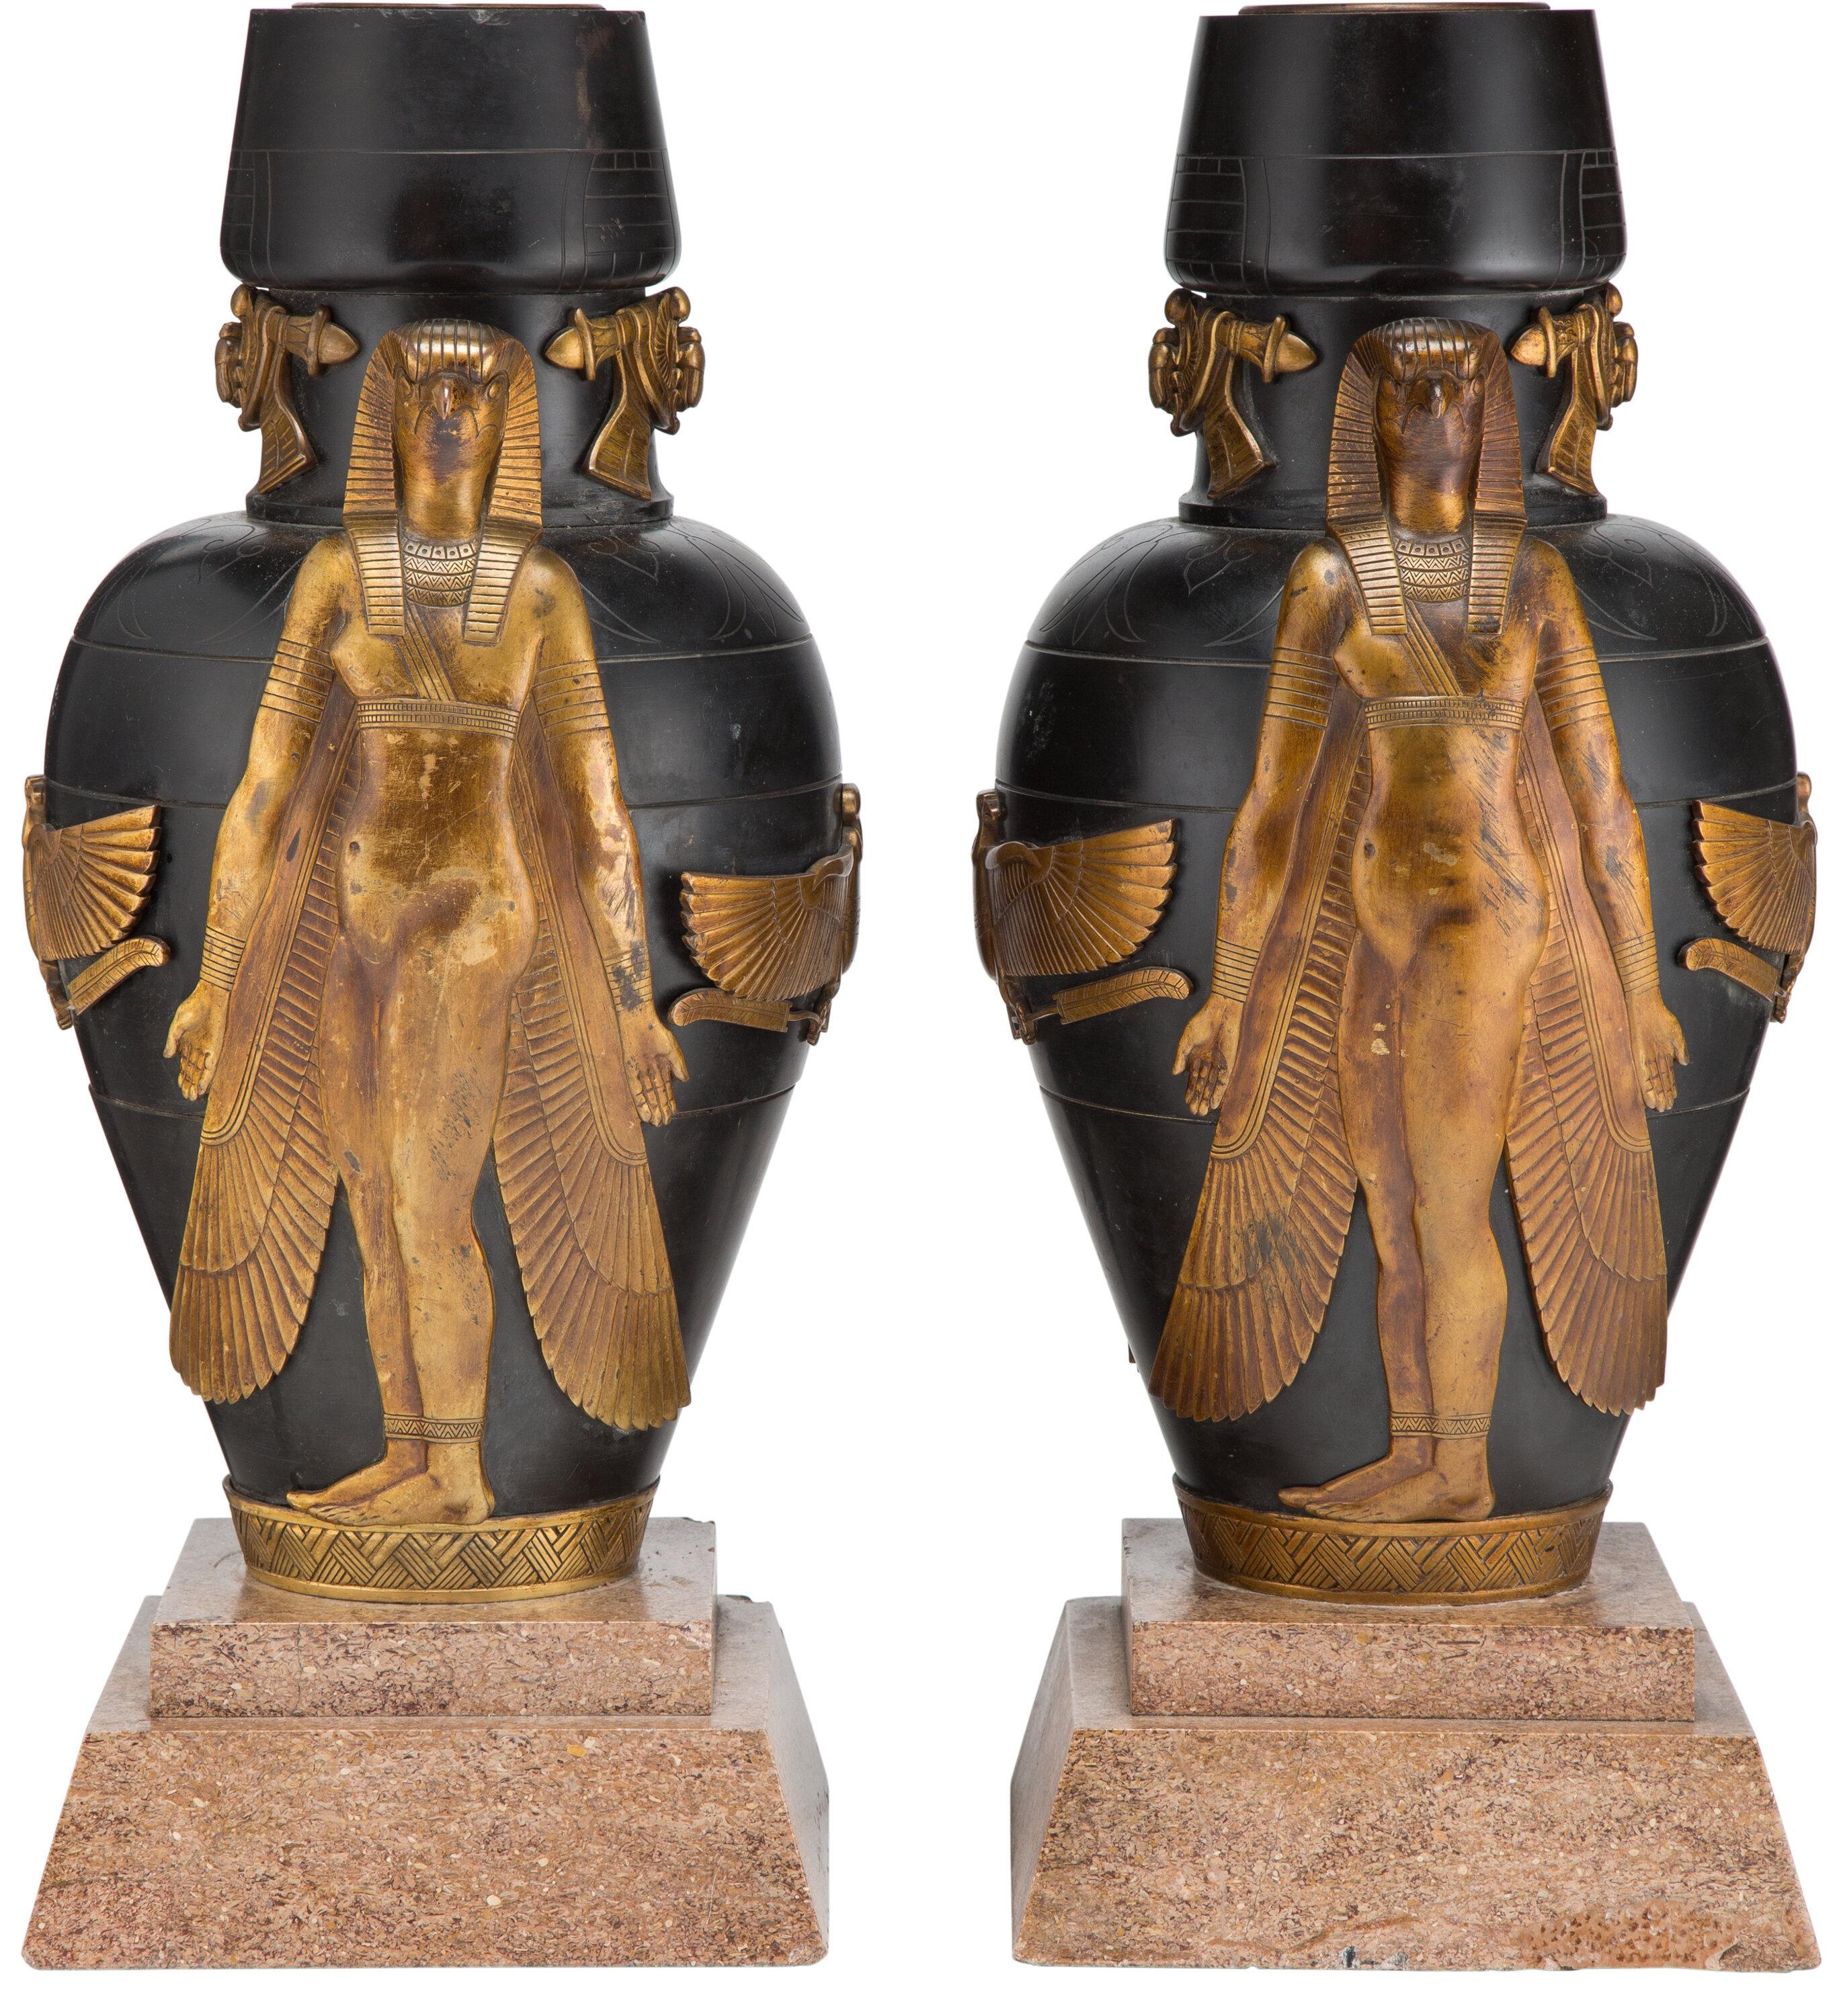 ägyptische urne